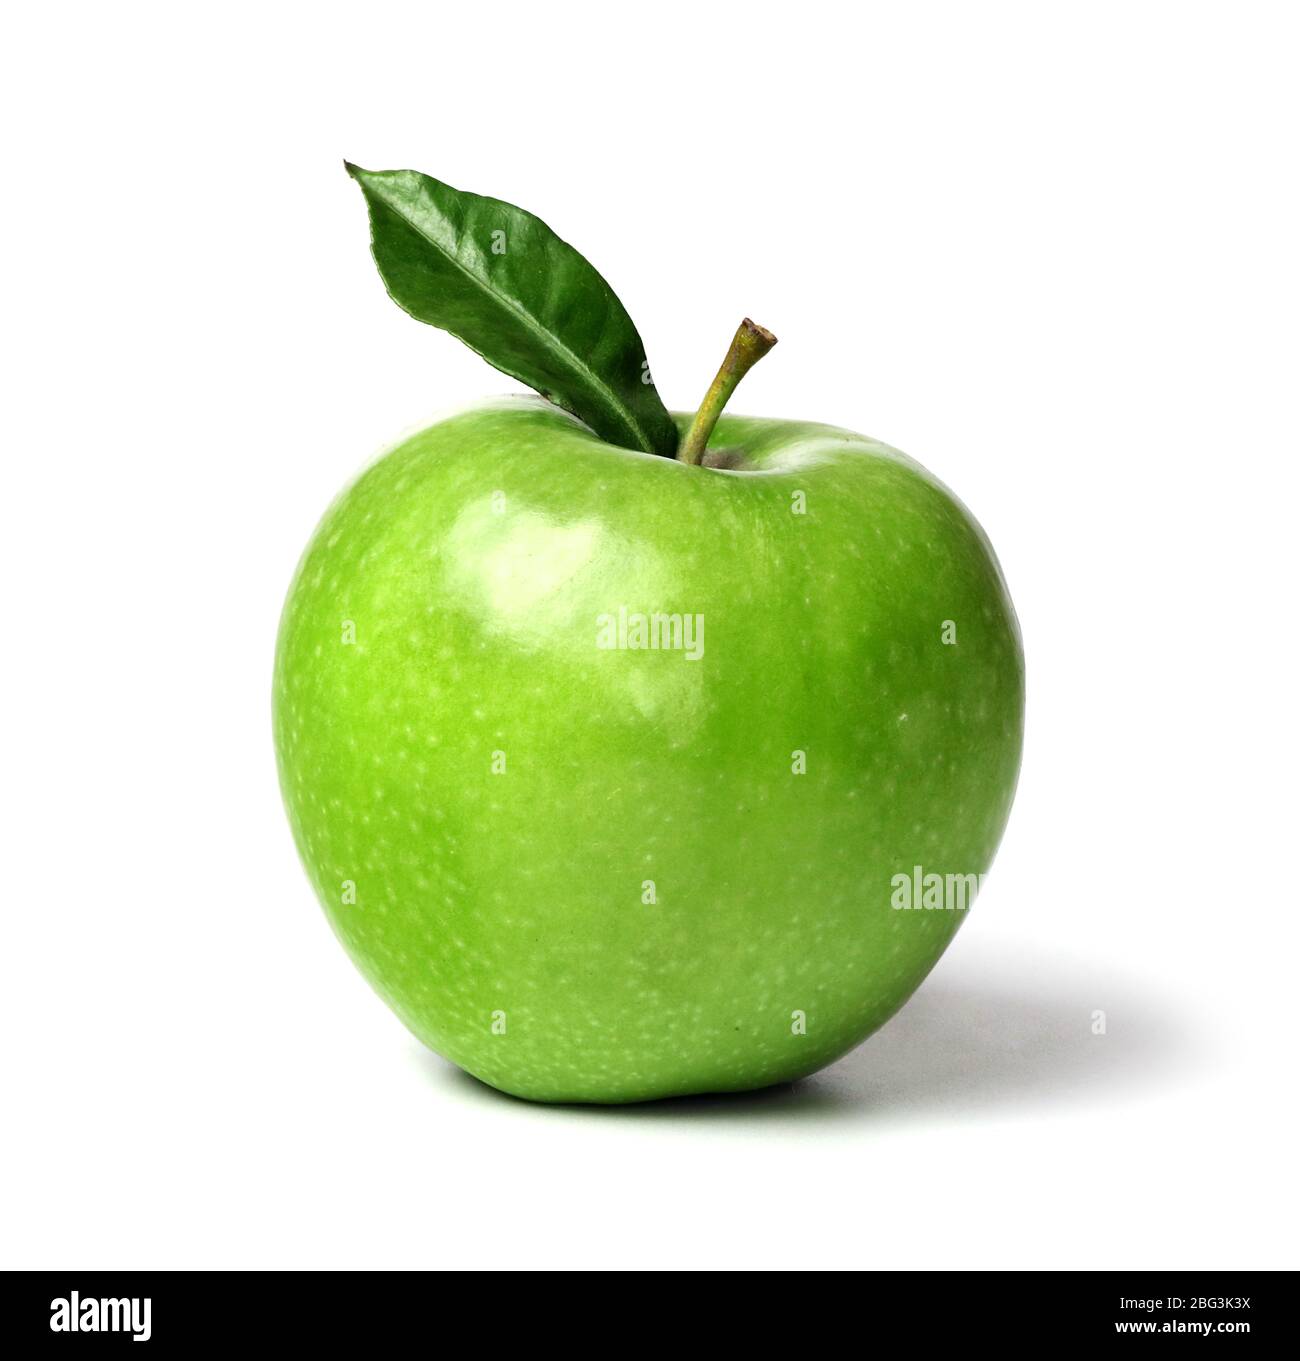 Pomme mûre verte avec feuille verte isolée sur un fond blanc Banque D'Images